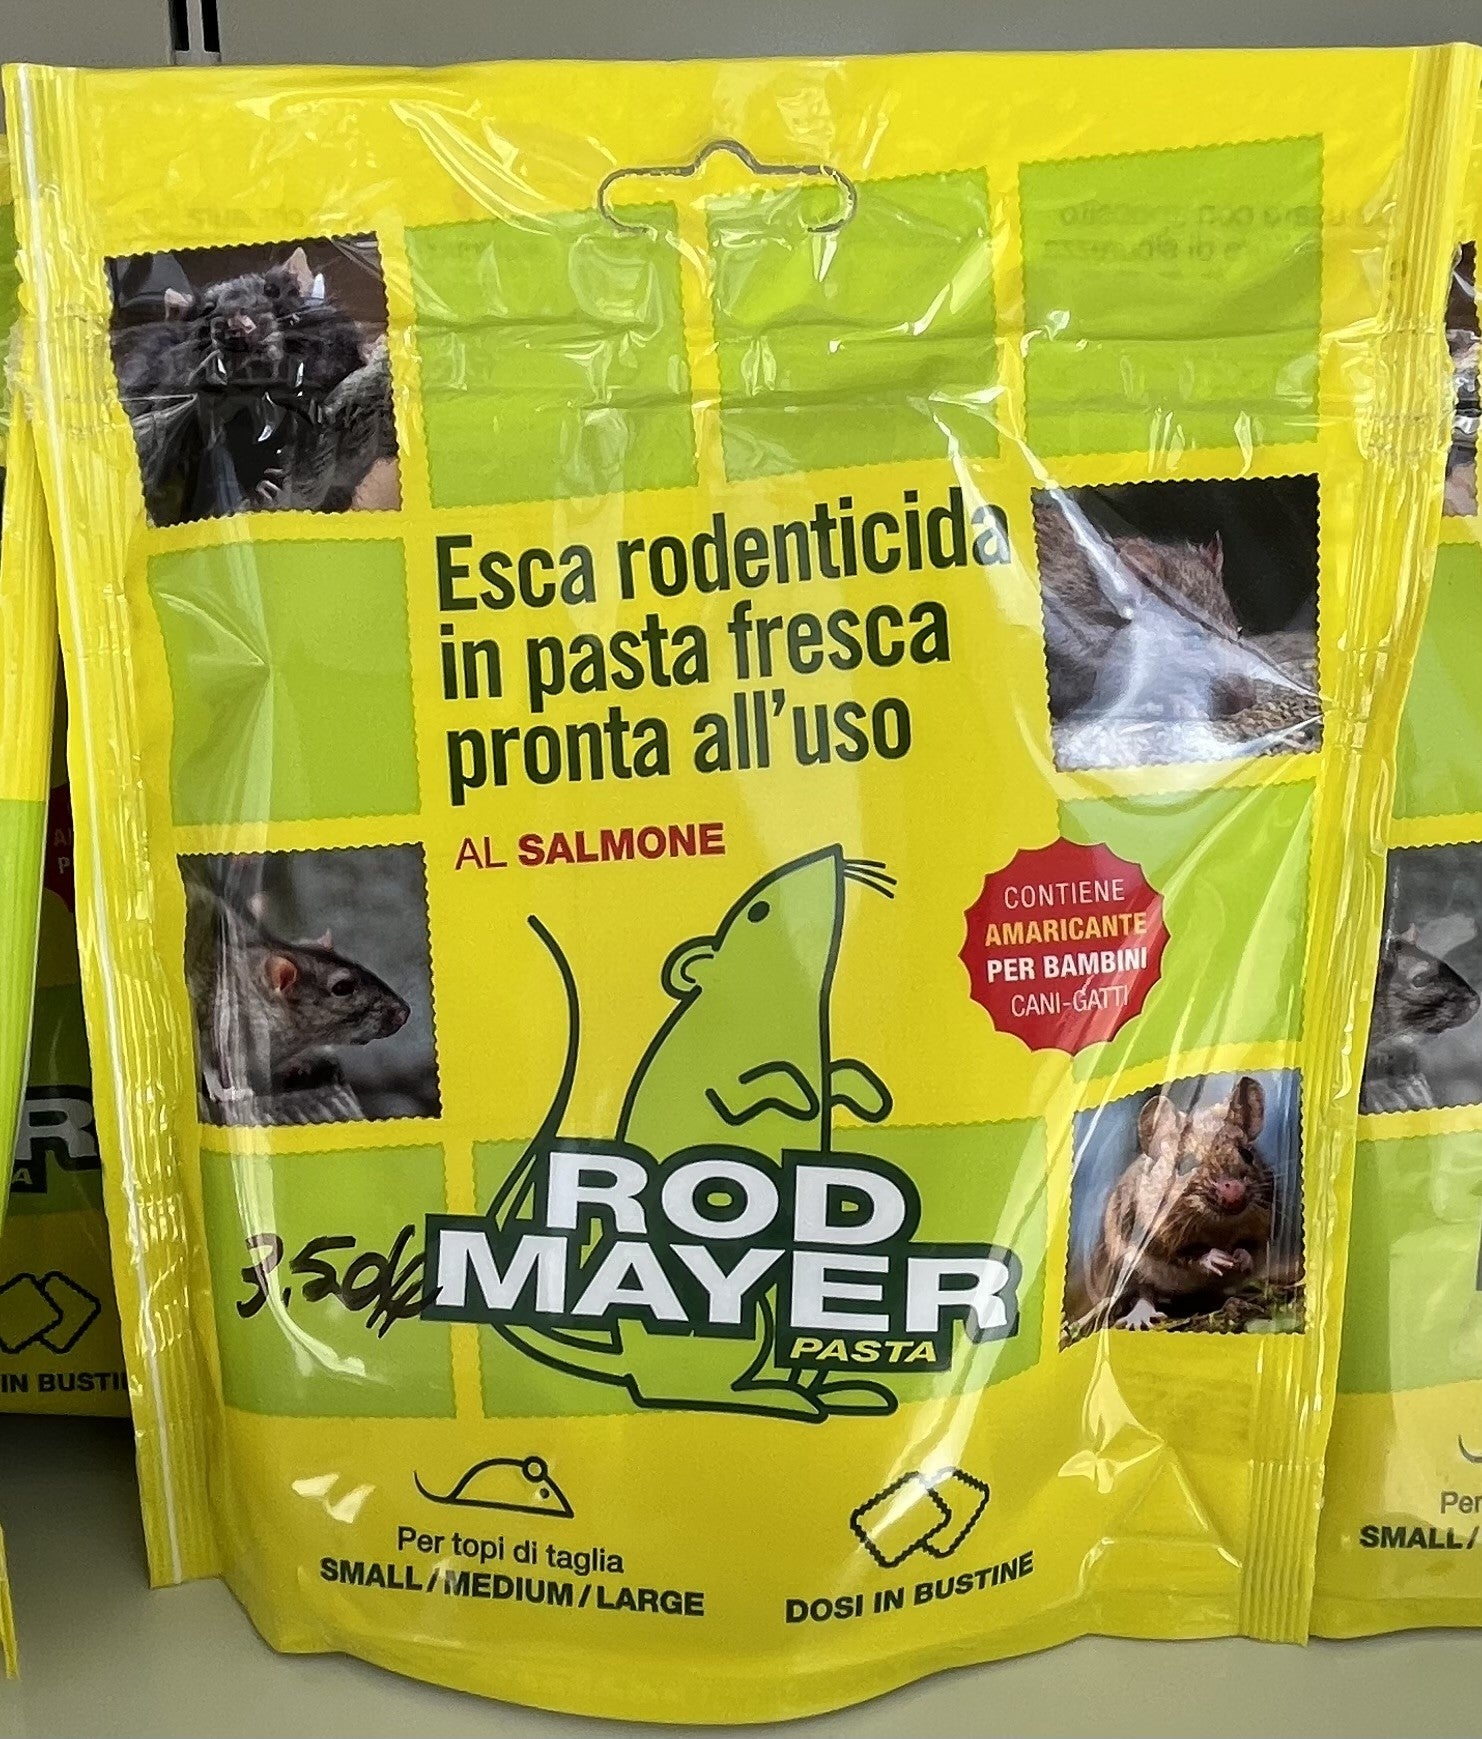 Topicida - Mayer - Esca - Rodenticida - Pasta - Fresca - Pronto - Uso - Rod - Salmone - Bustine